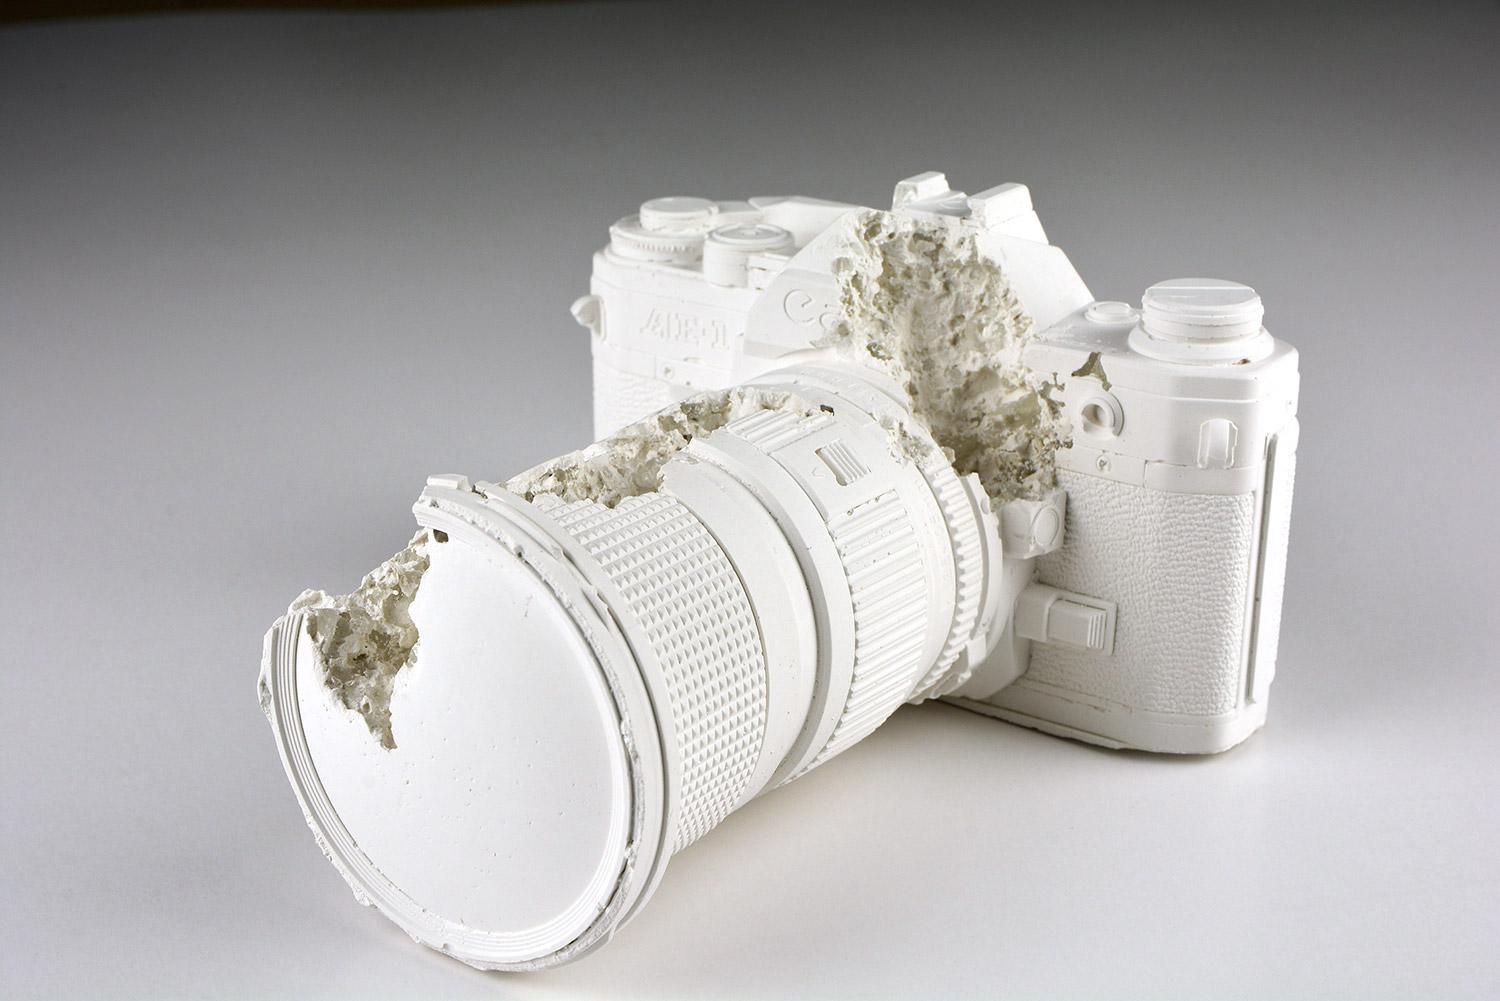 Figurative Sculpture Daniel Arsham - FUTURE RELIC 02 - Sculpture en édition limitée - Design d'art moderne - Photographie 35 mm - Concept Canon